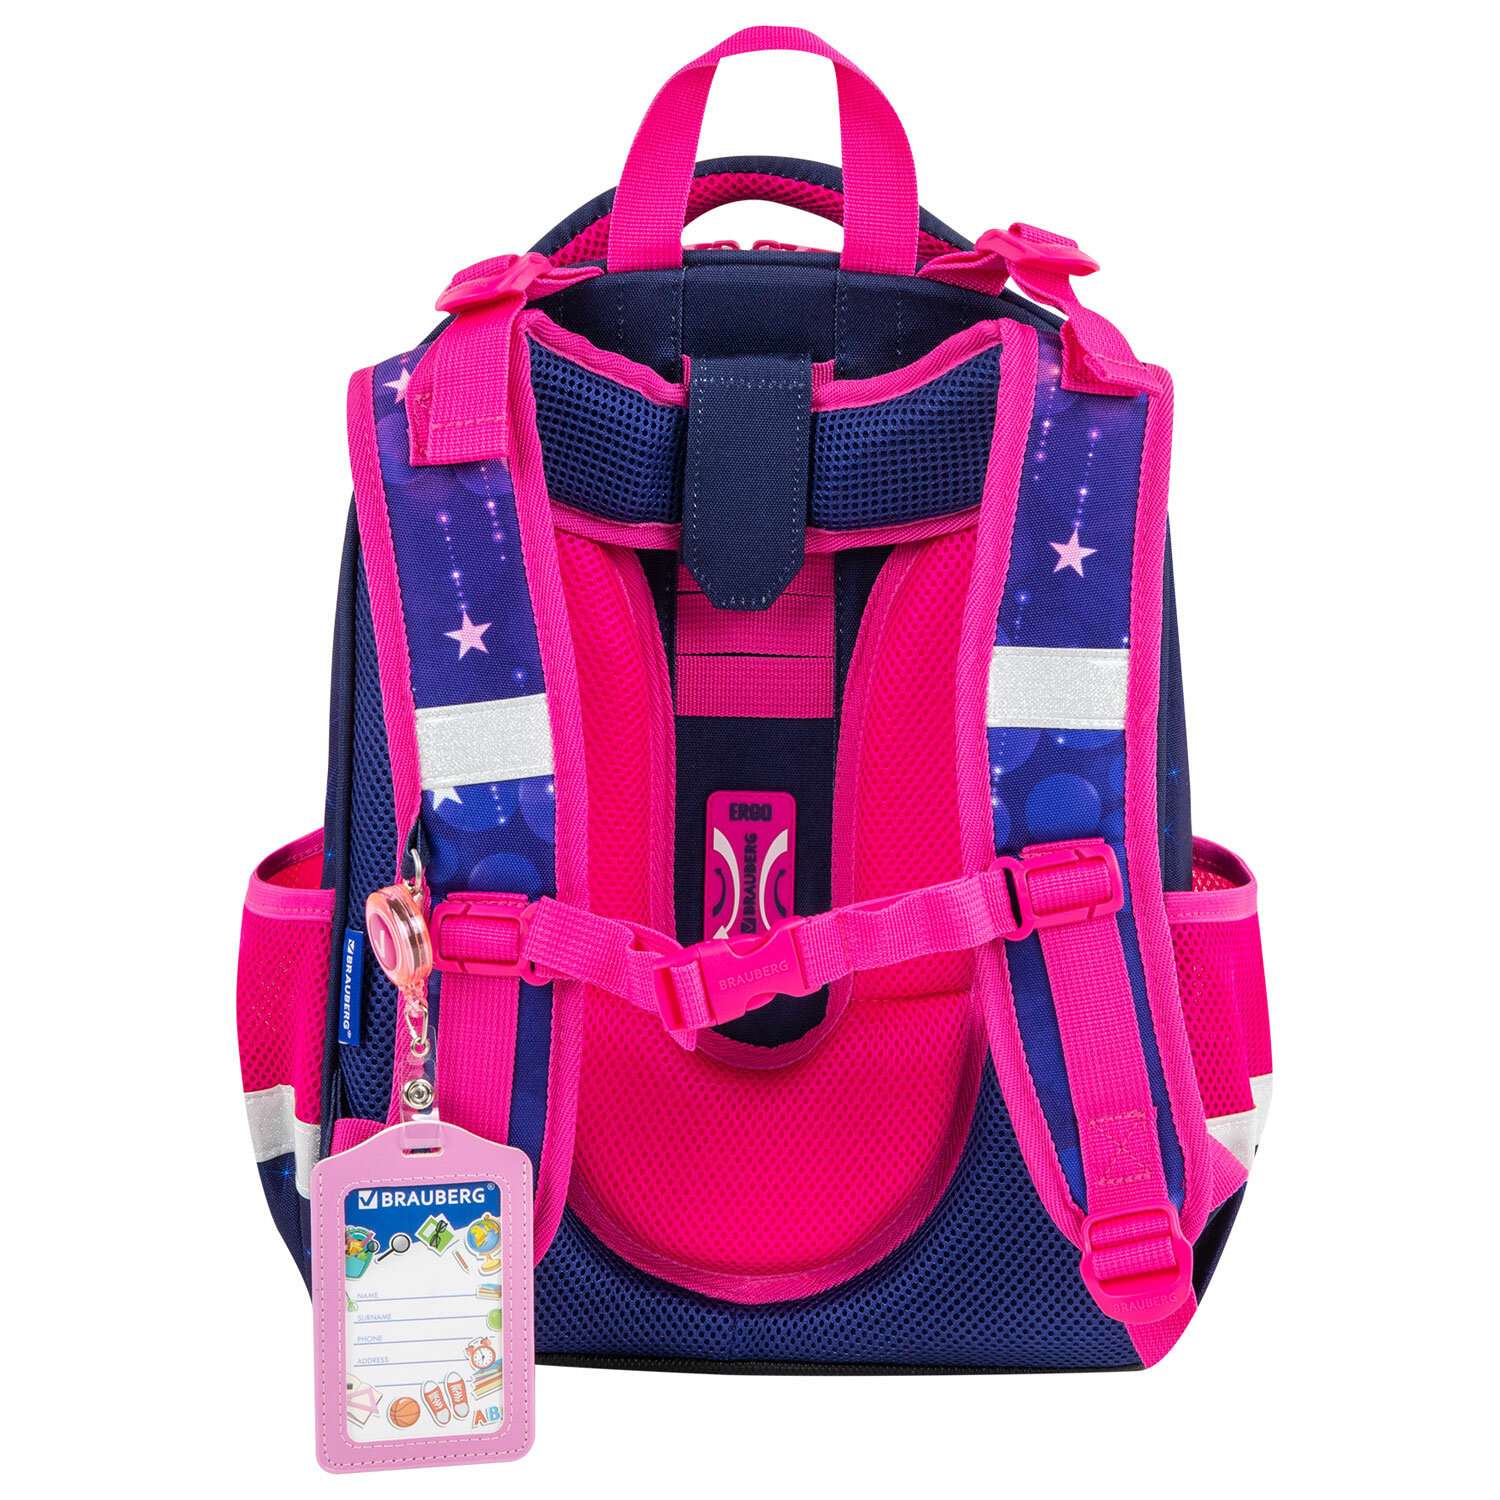 Рюкзак школьный Brauberg портфель детский ранец в 1 класс - фото 19